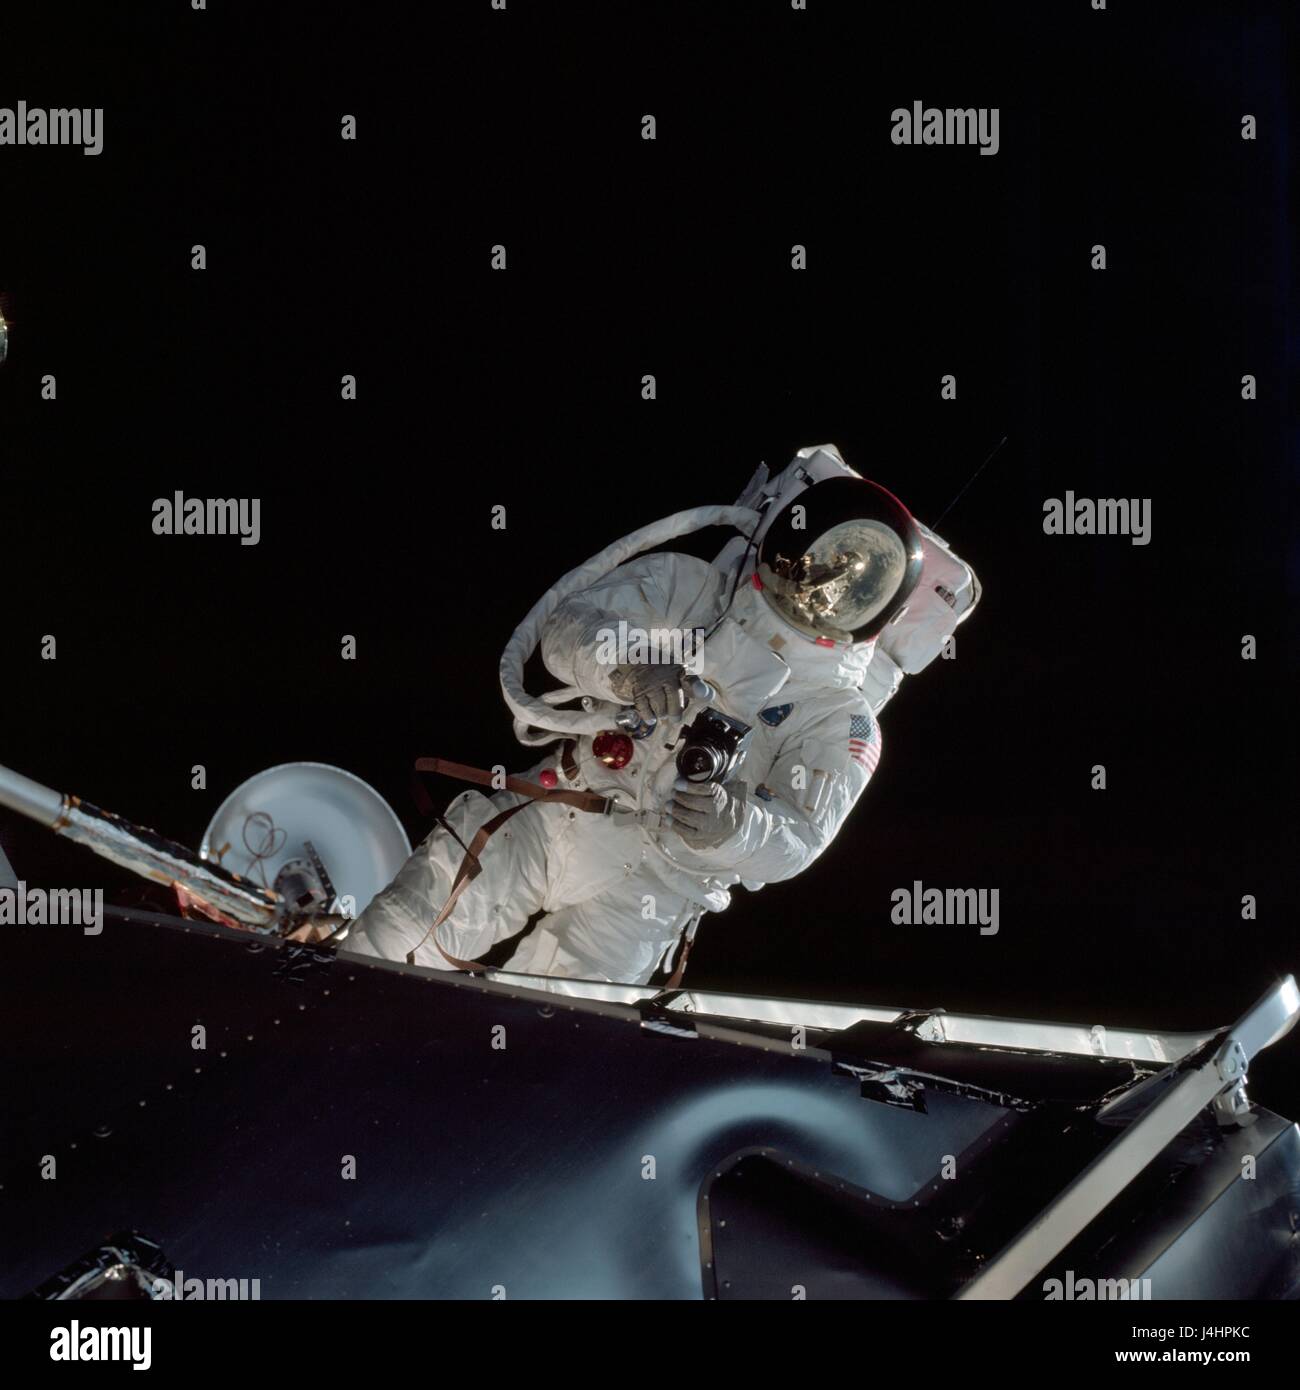 9 Apollo de la NASA mission orbitale de la terre premier astronaute de l'équipage Russell Schweickart prend des photos avec un appareil Hasselblad 70mm lors d'une sortie dans l'activité extravéhiculaire 7 Mars, 1969 dans l'orbite de la Terre. (Photo de la NASA par Planetpix) Banque D'Images